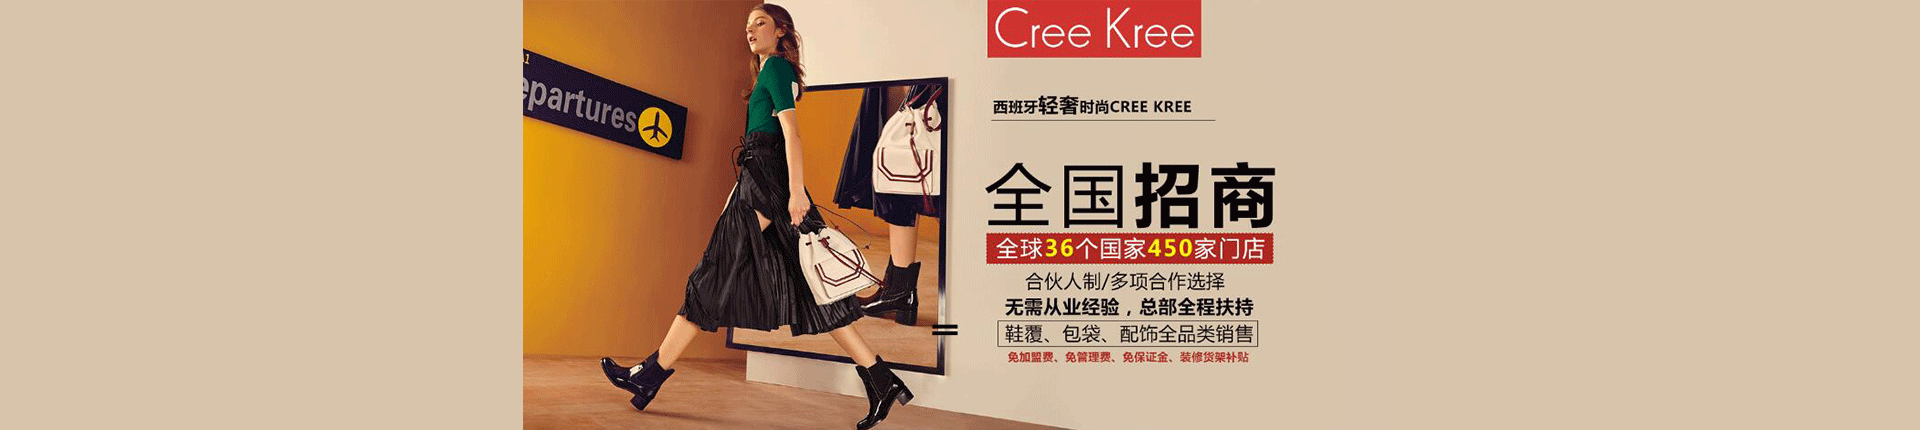 creekree官方网站